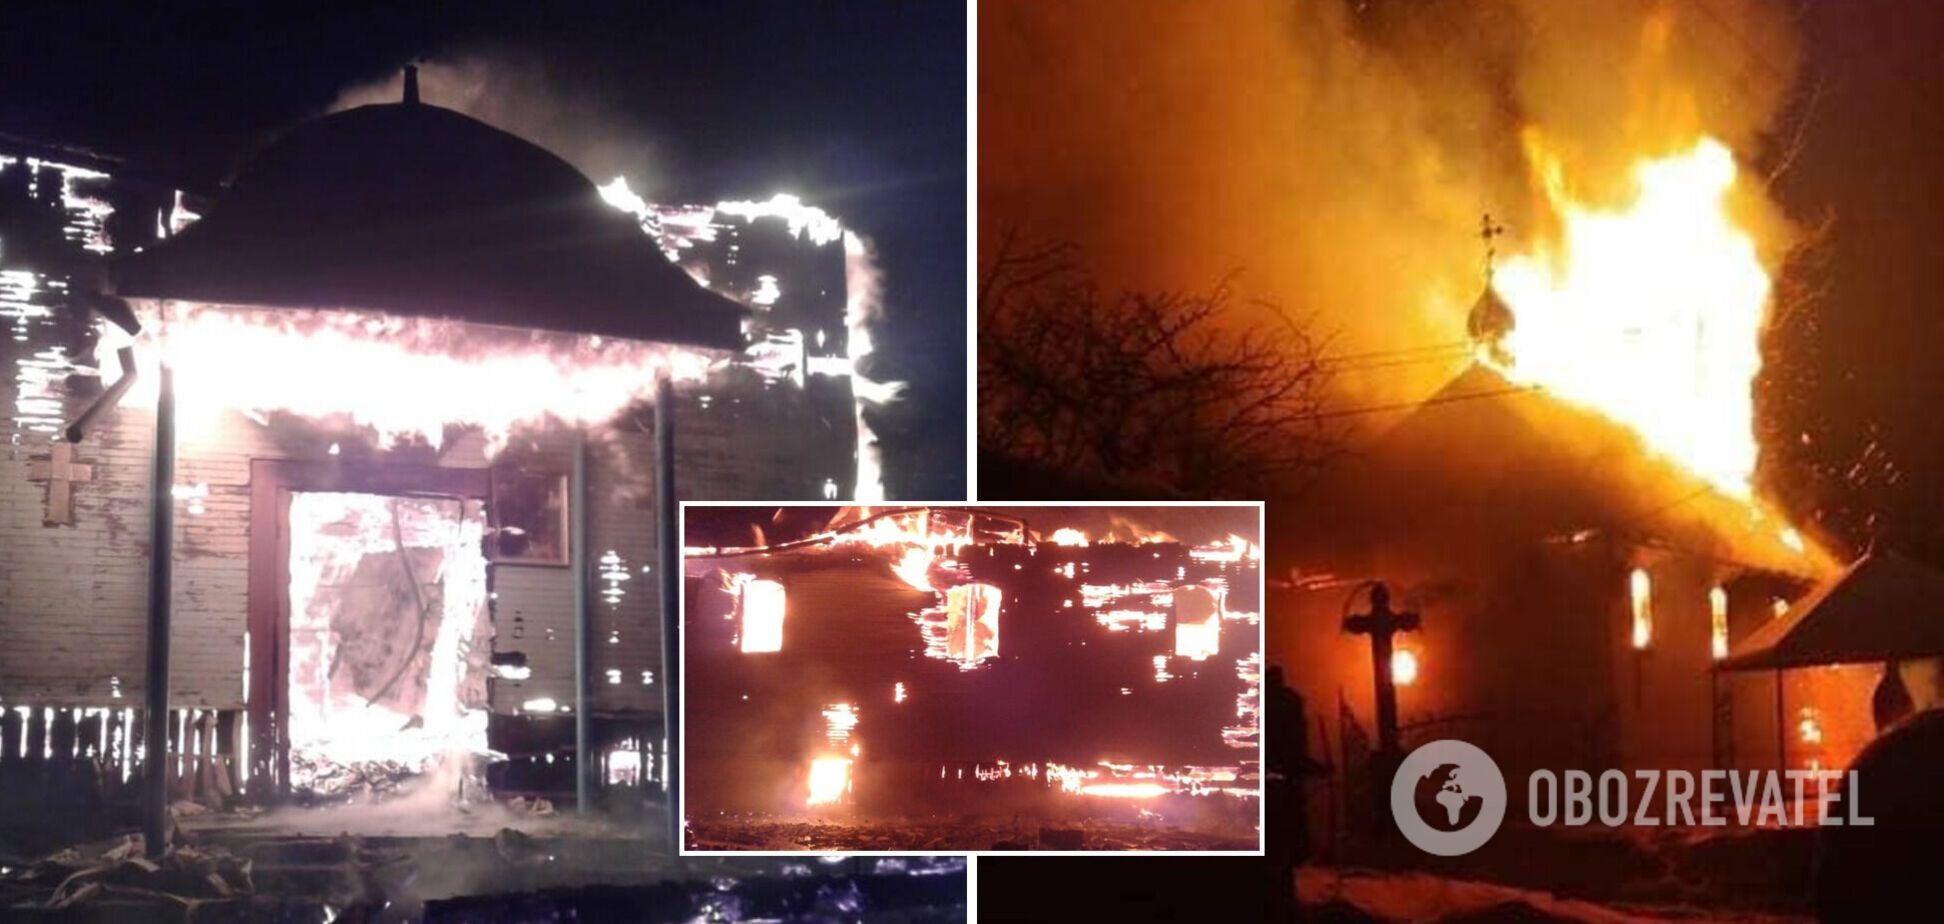 Деревянная церковь на Закарпатье сгорела дотла